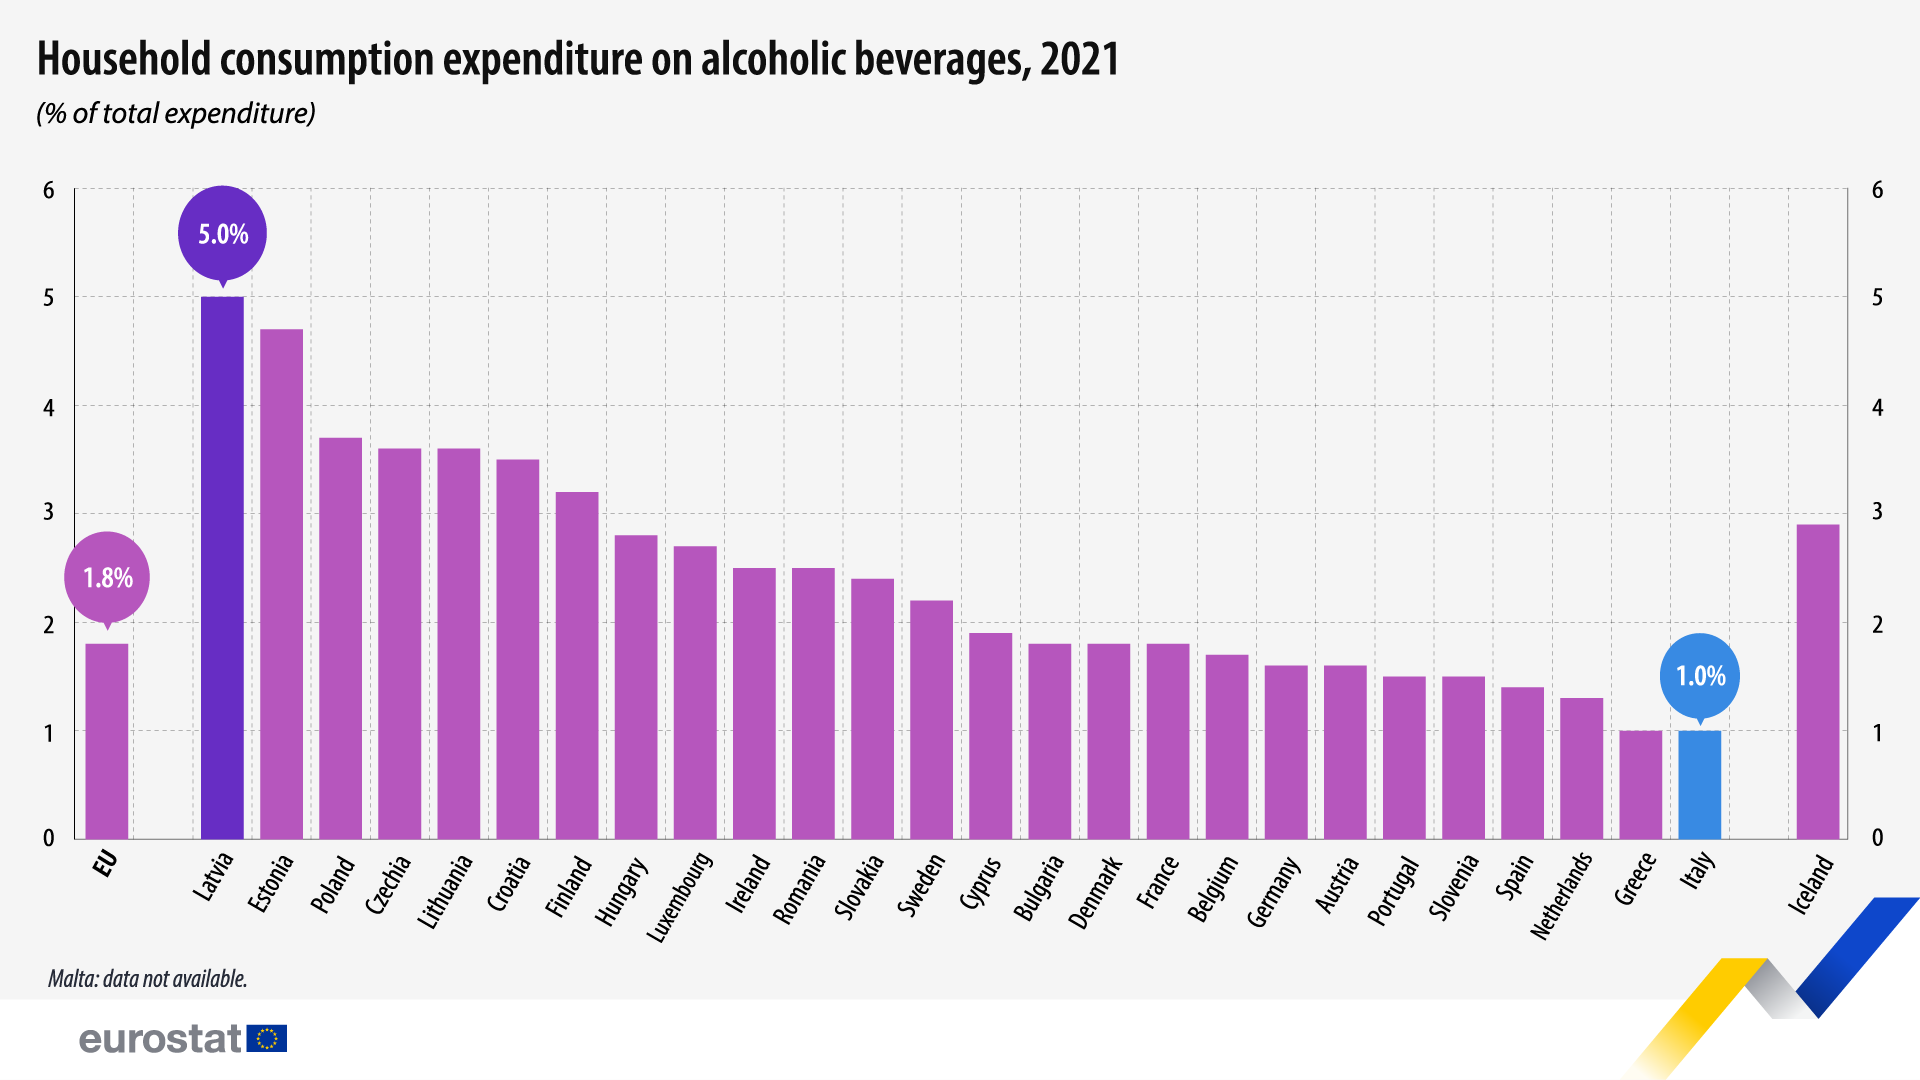 Cheltuielile gospodăriilor pentru băuturi alcoolice, state UE, 2021